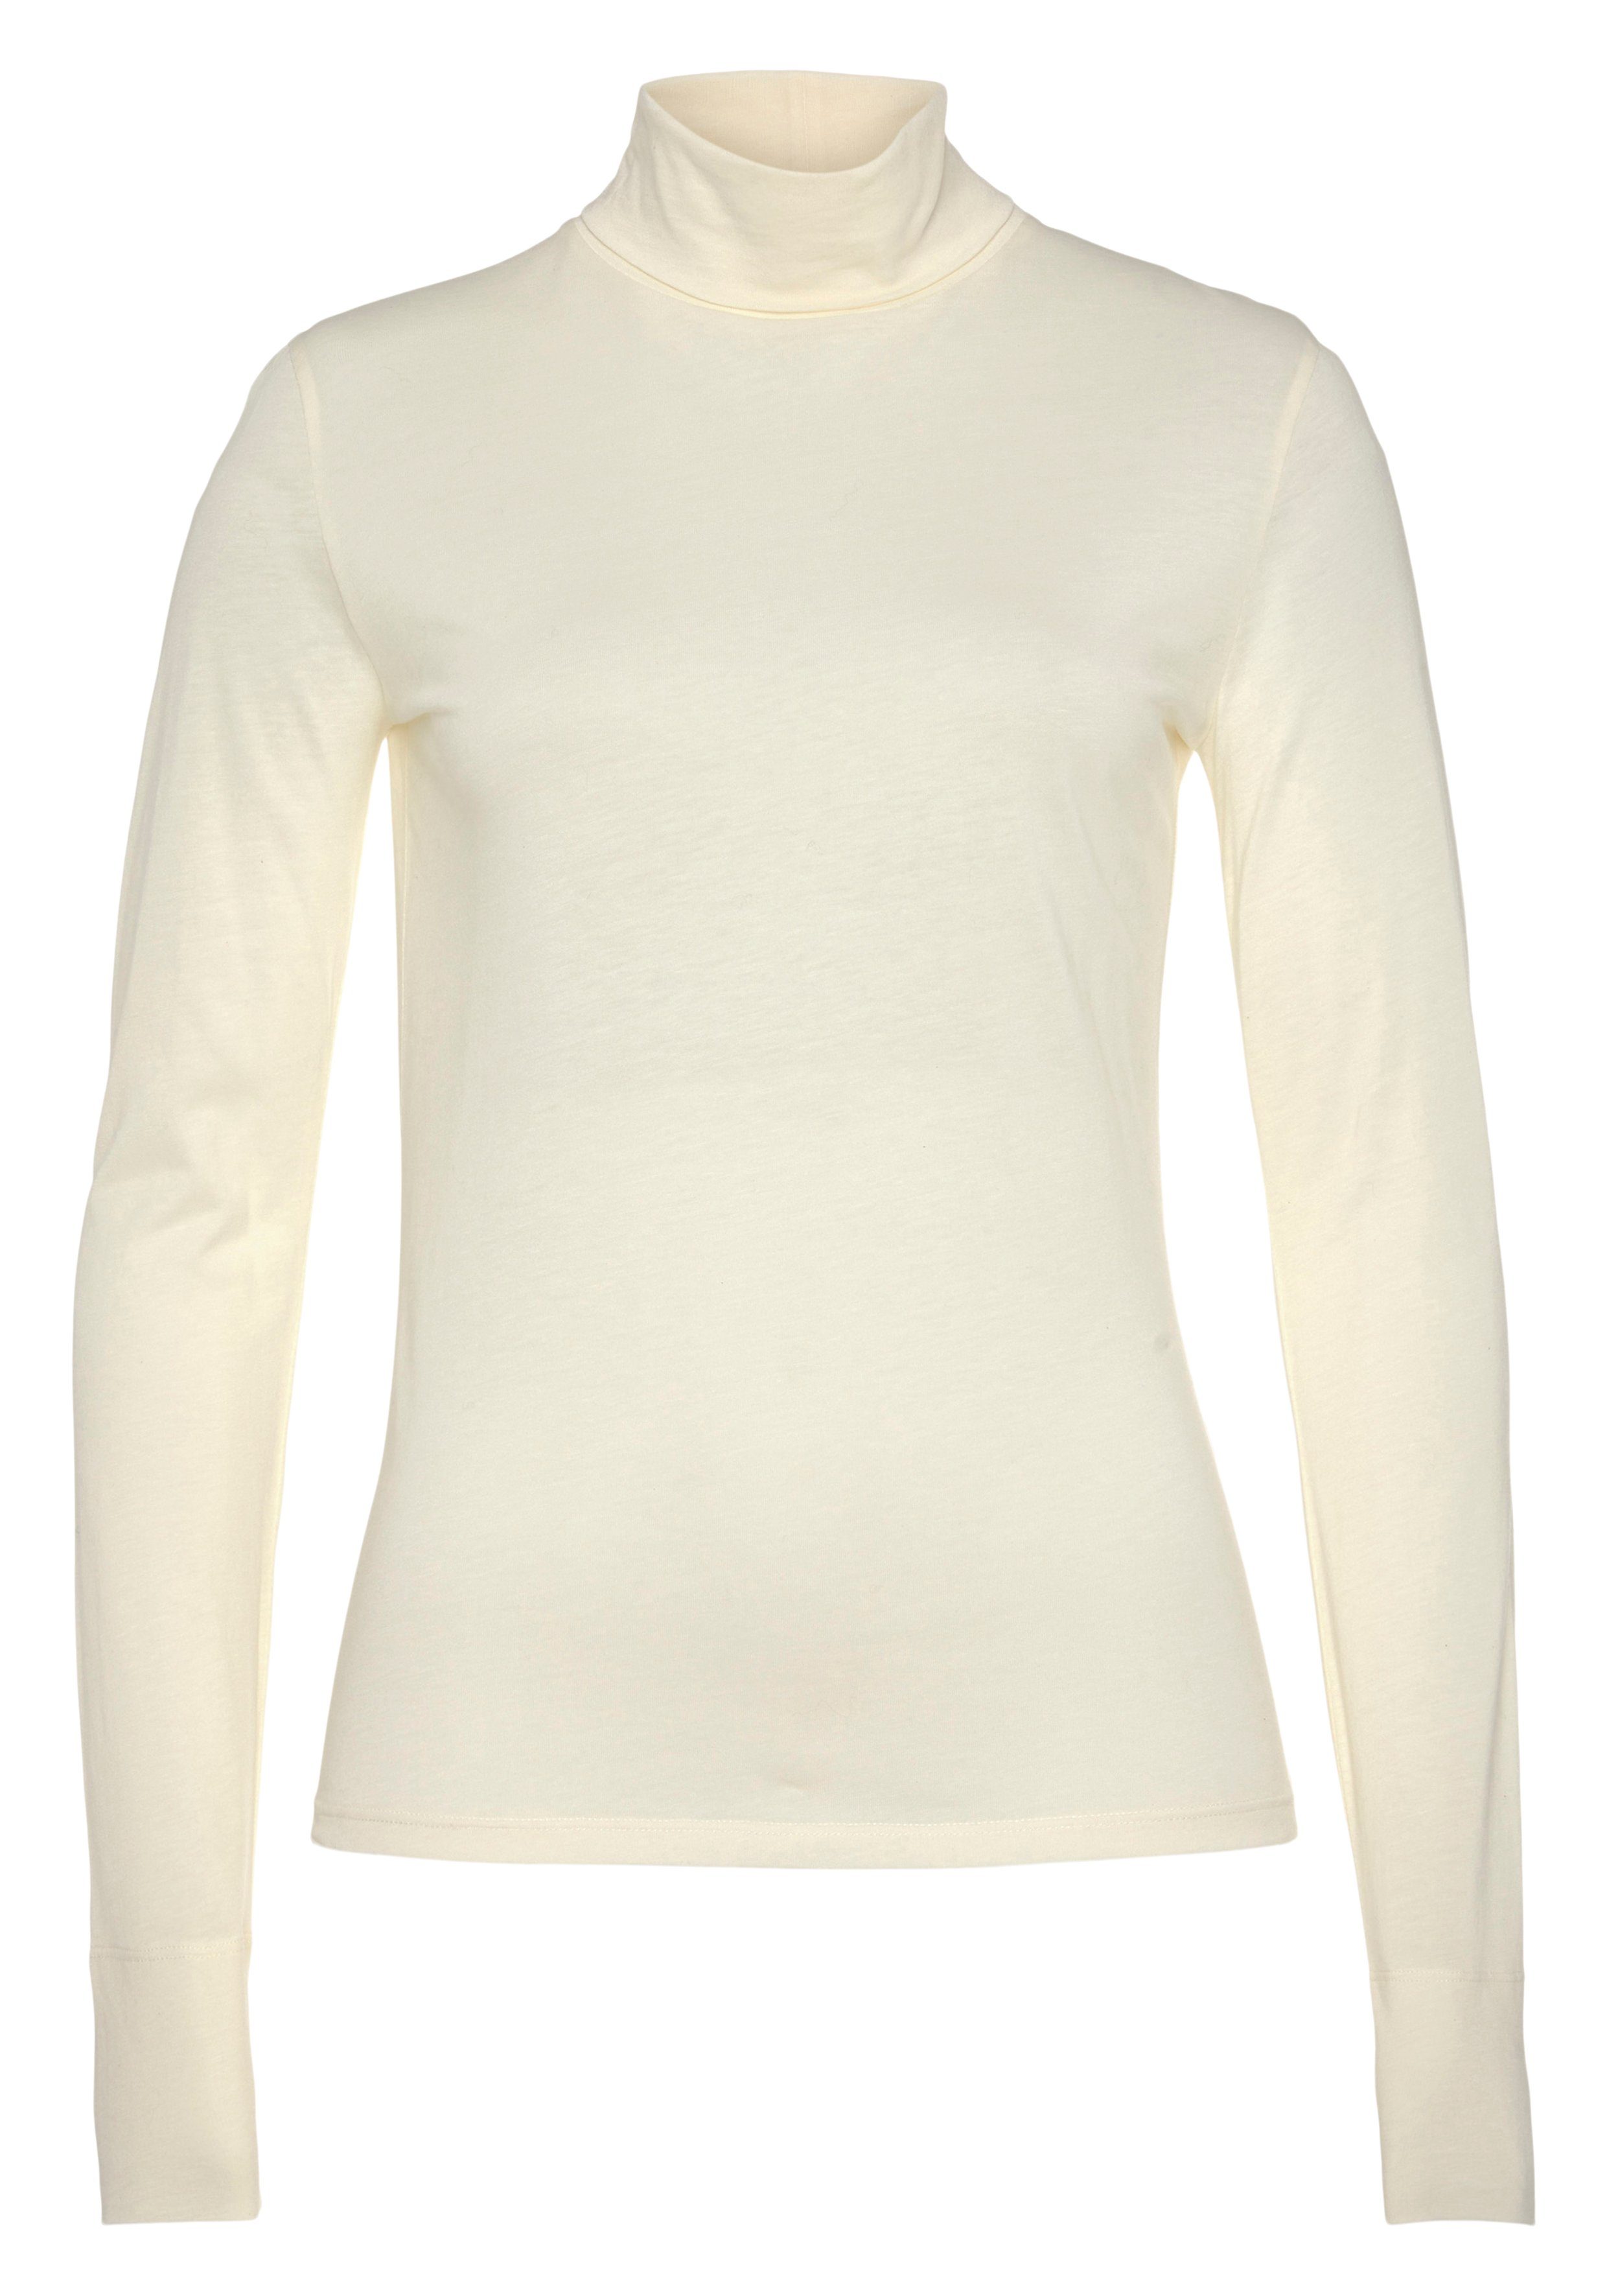 BOSS ORANGE Langarmshirt C_Emerie_2 Stehkragen, atmungsaktive Rolli hochwertige Premium Basic, White Qualität, Open